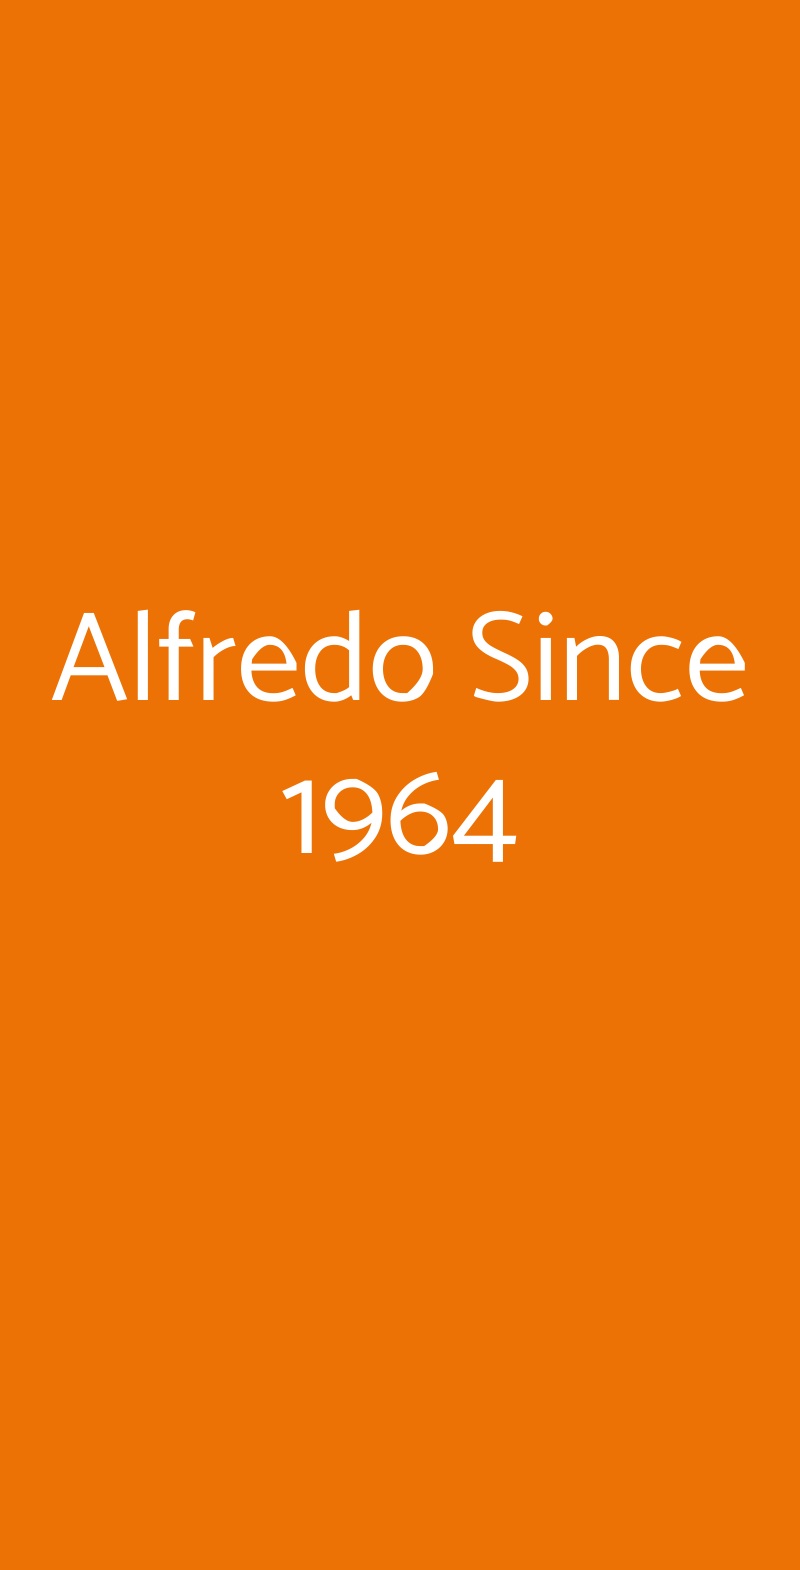 Alfredo Since 1964 Milano menù 1 pagina